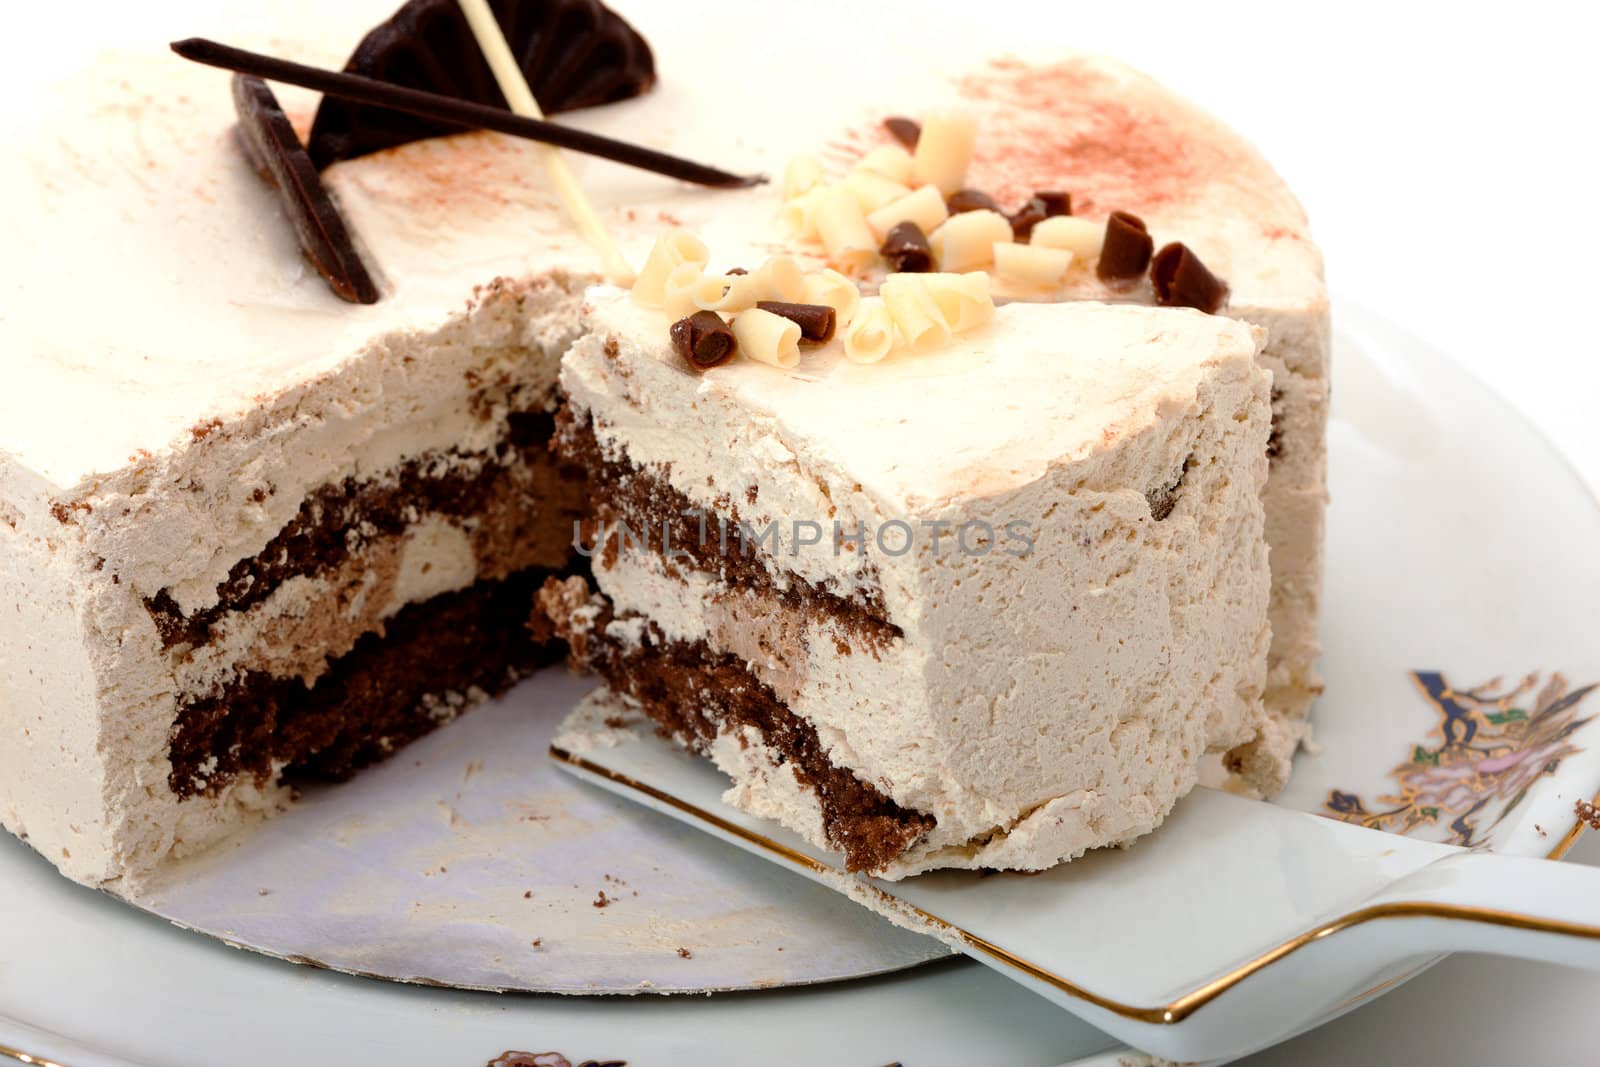 photo of cake on white background